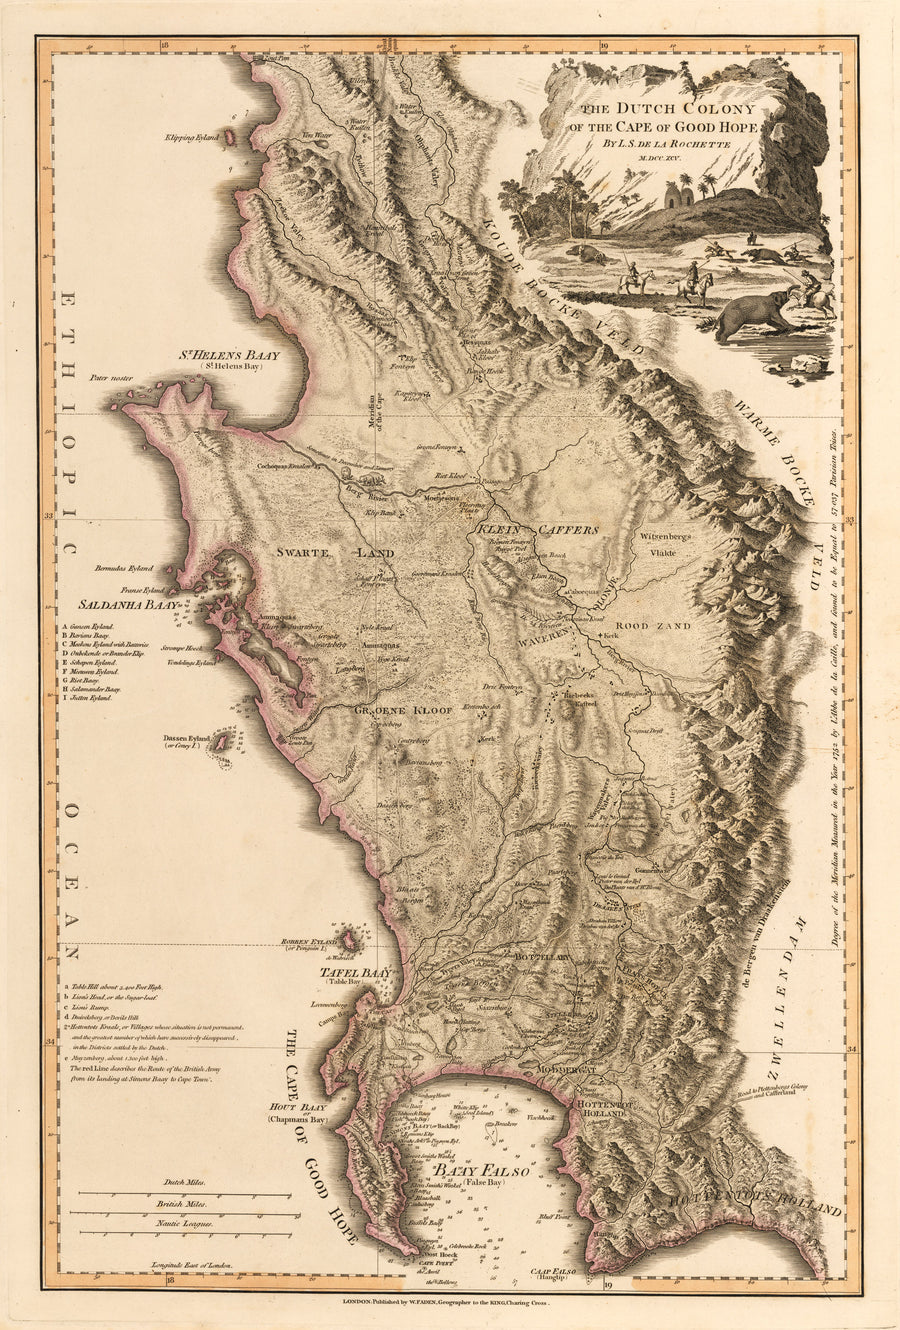 The Dutch Colony of the Cape of Good Hope by L.S. de la Rochette